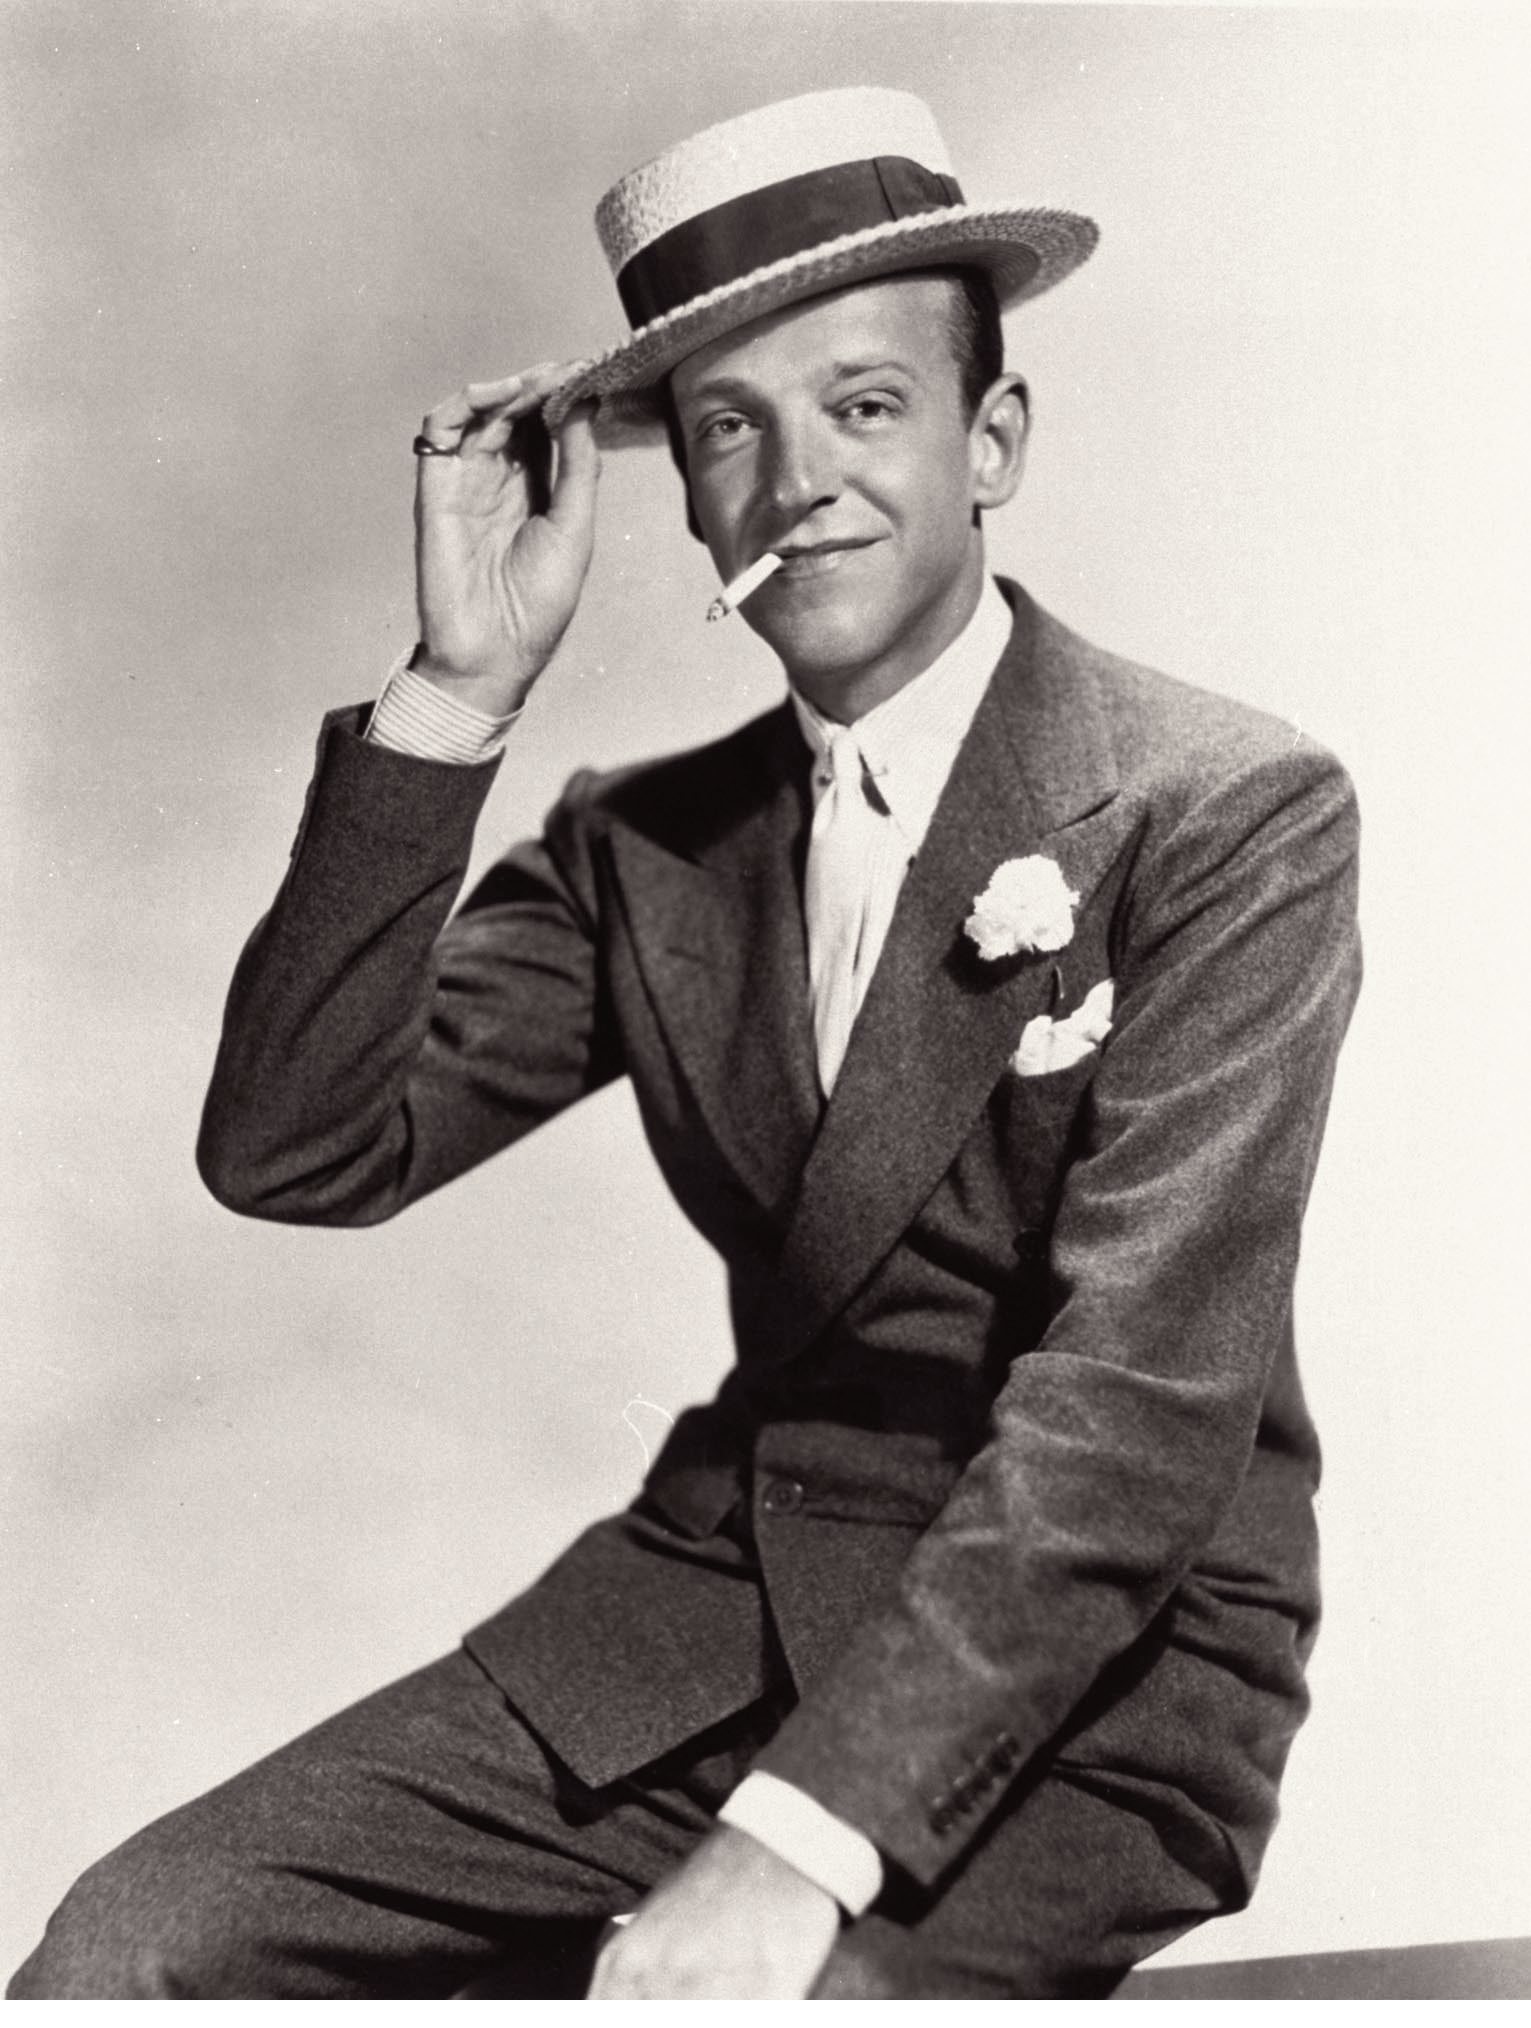 El actor y bailarn Fred Astaire.